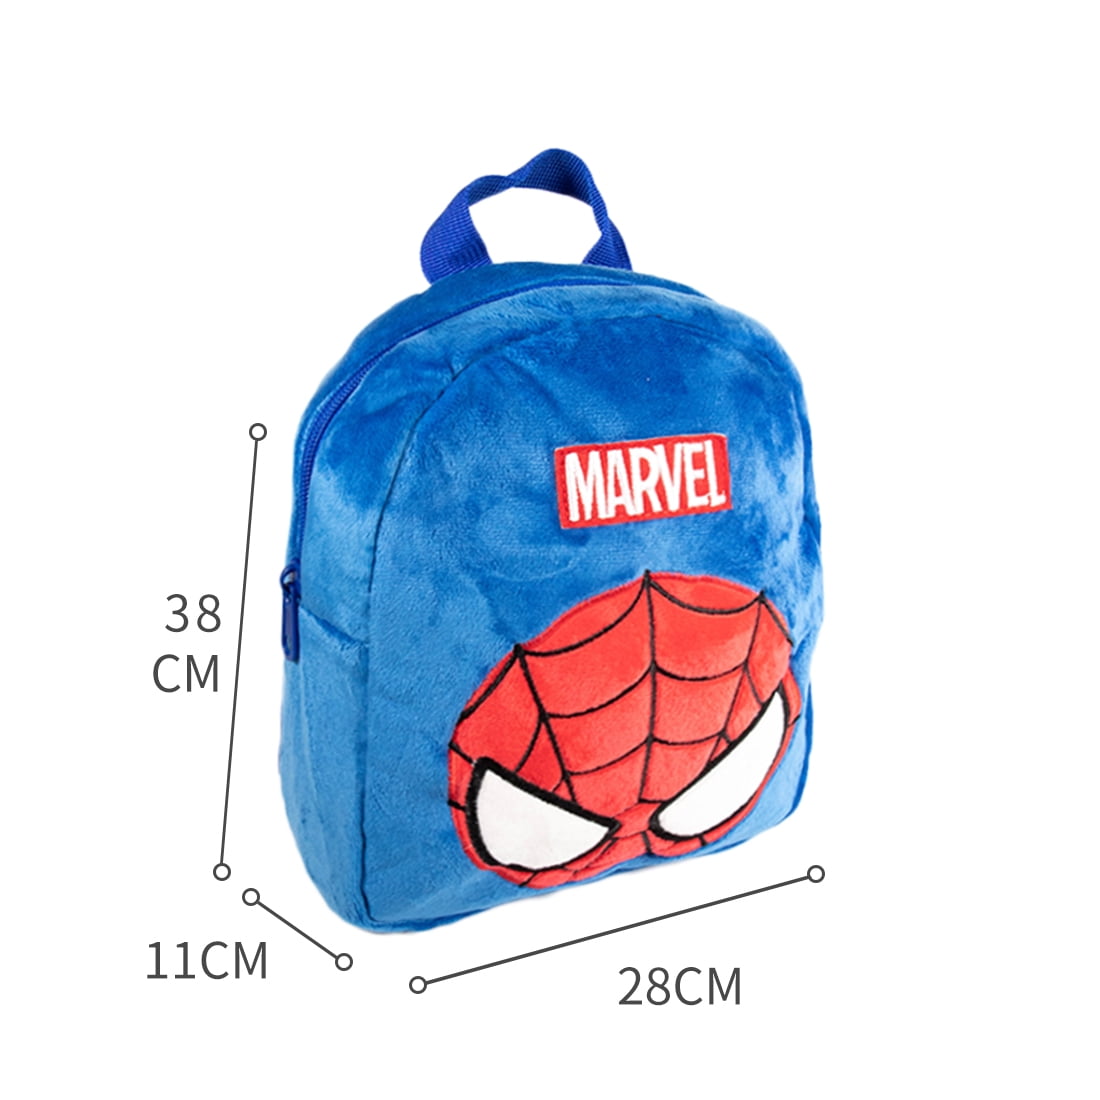 MINISO Marvel Avengers Backpack Cute Plush Lightweight School Bag for Boys  Girls Cartoon Backpacks,Thor